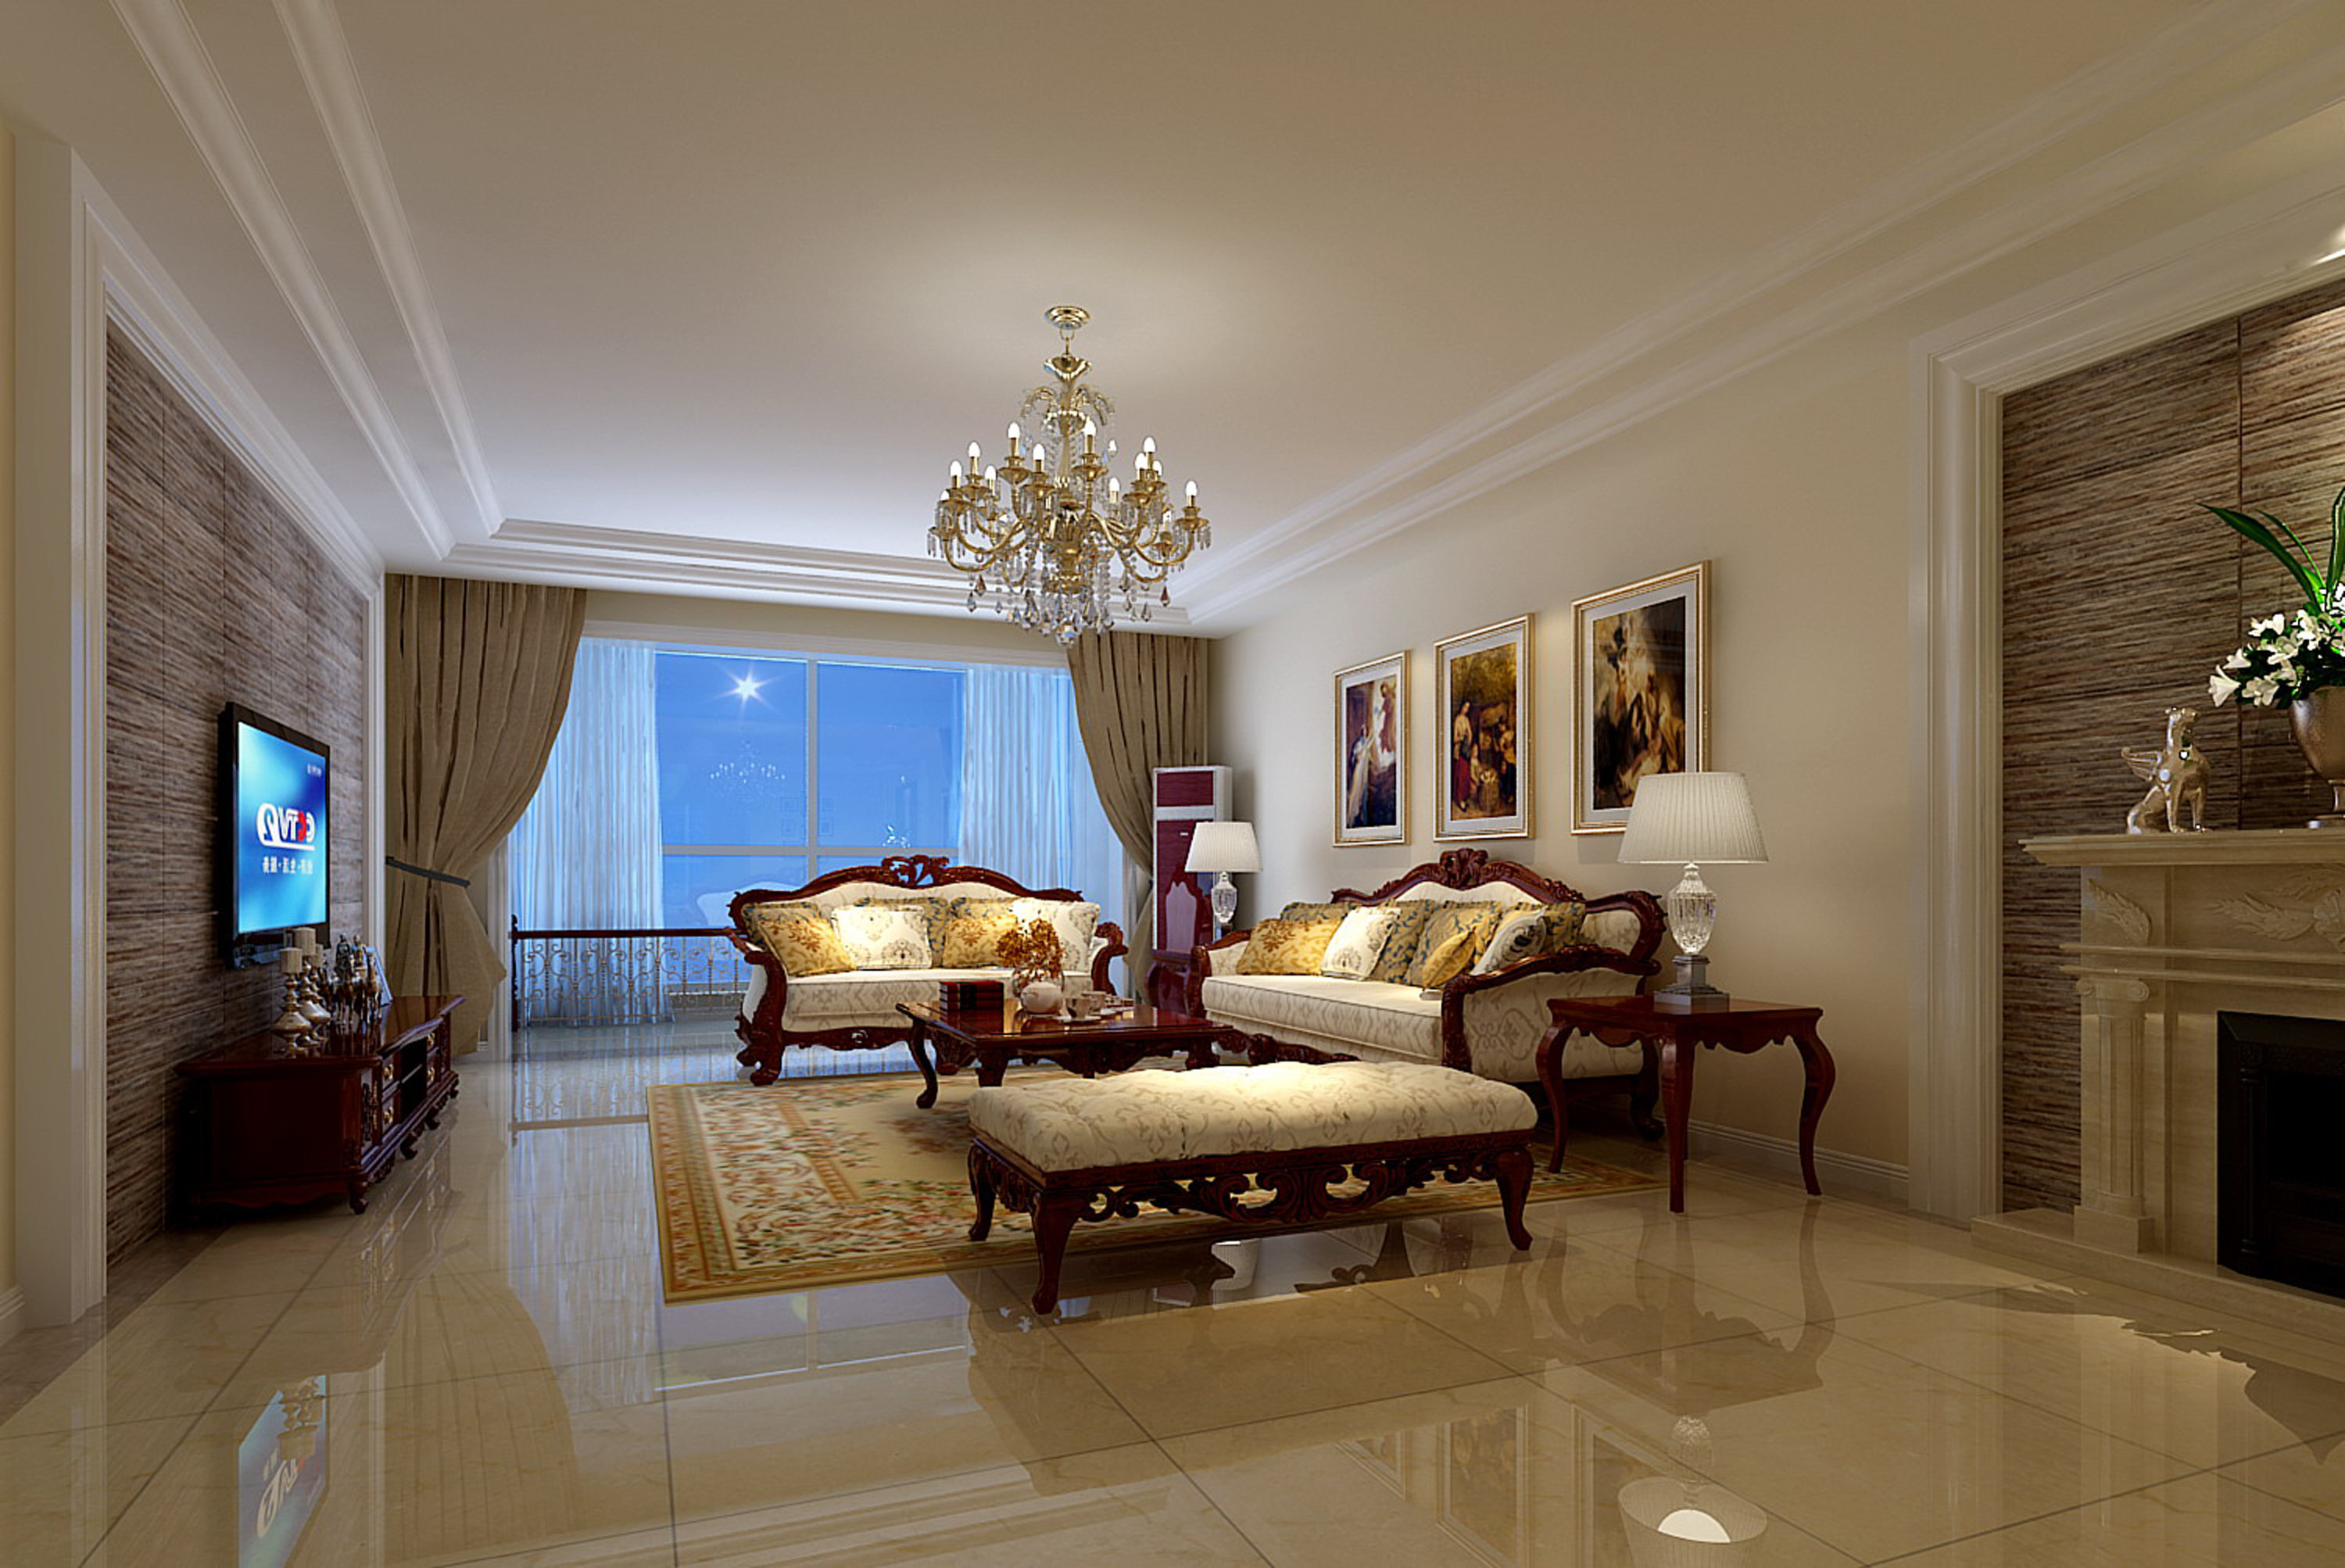 简约 欧式 别墅 客厅图片来自实创装饰上海公司在简约欧式别墅装修的分享